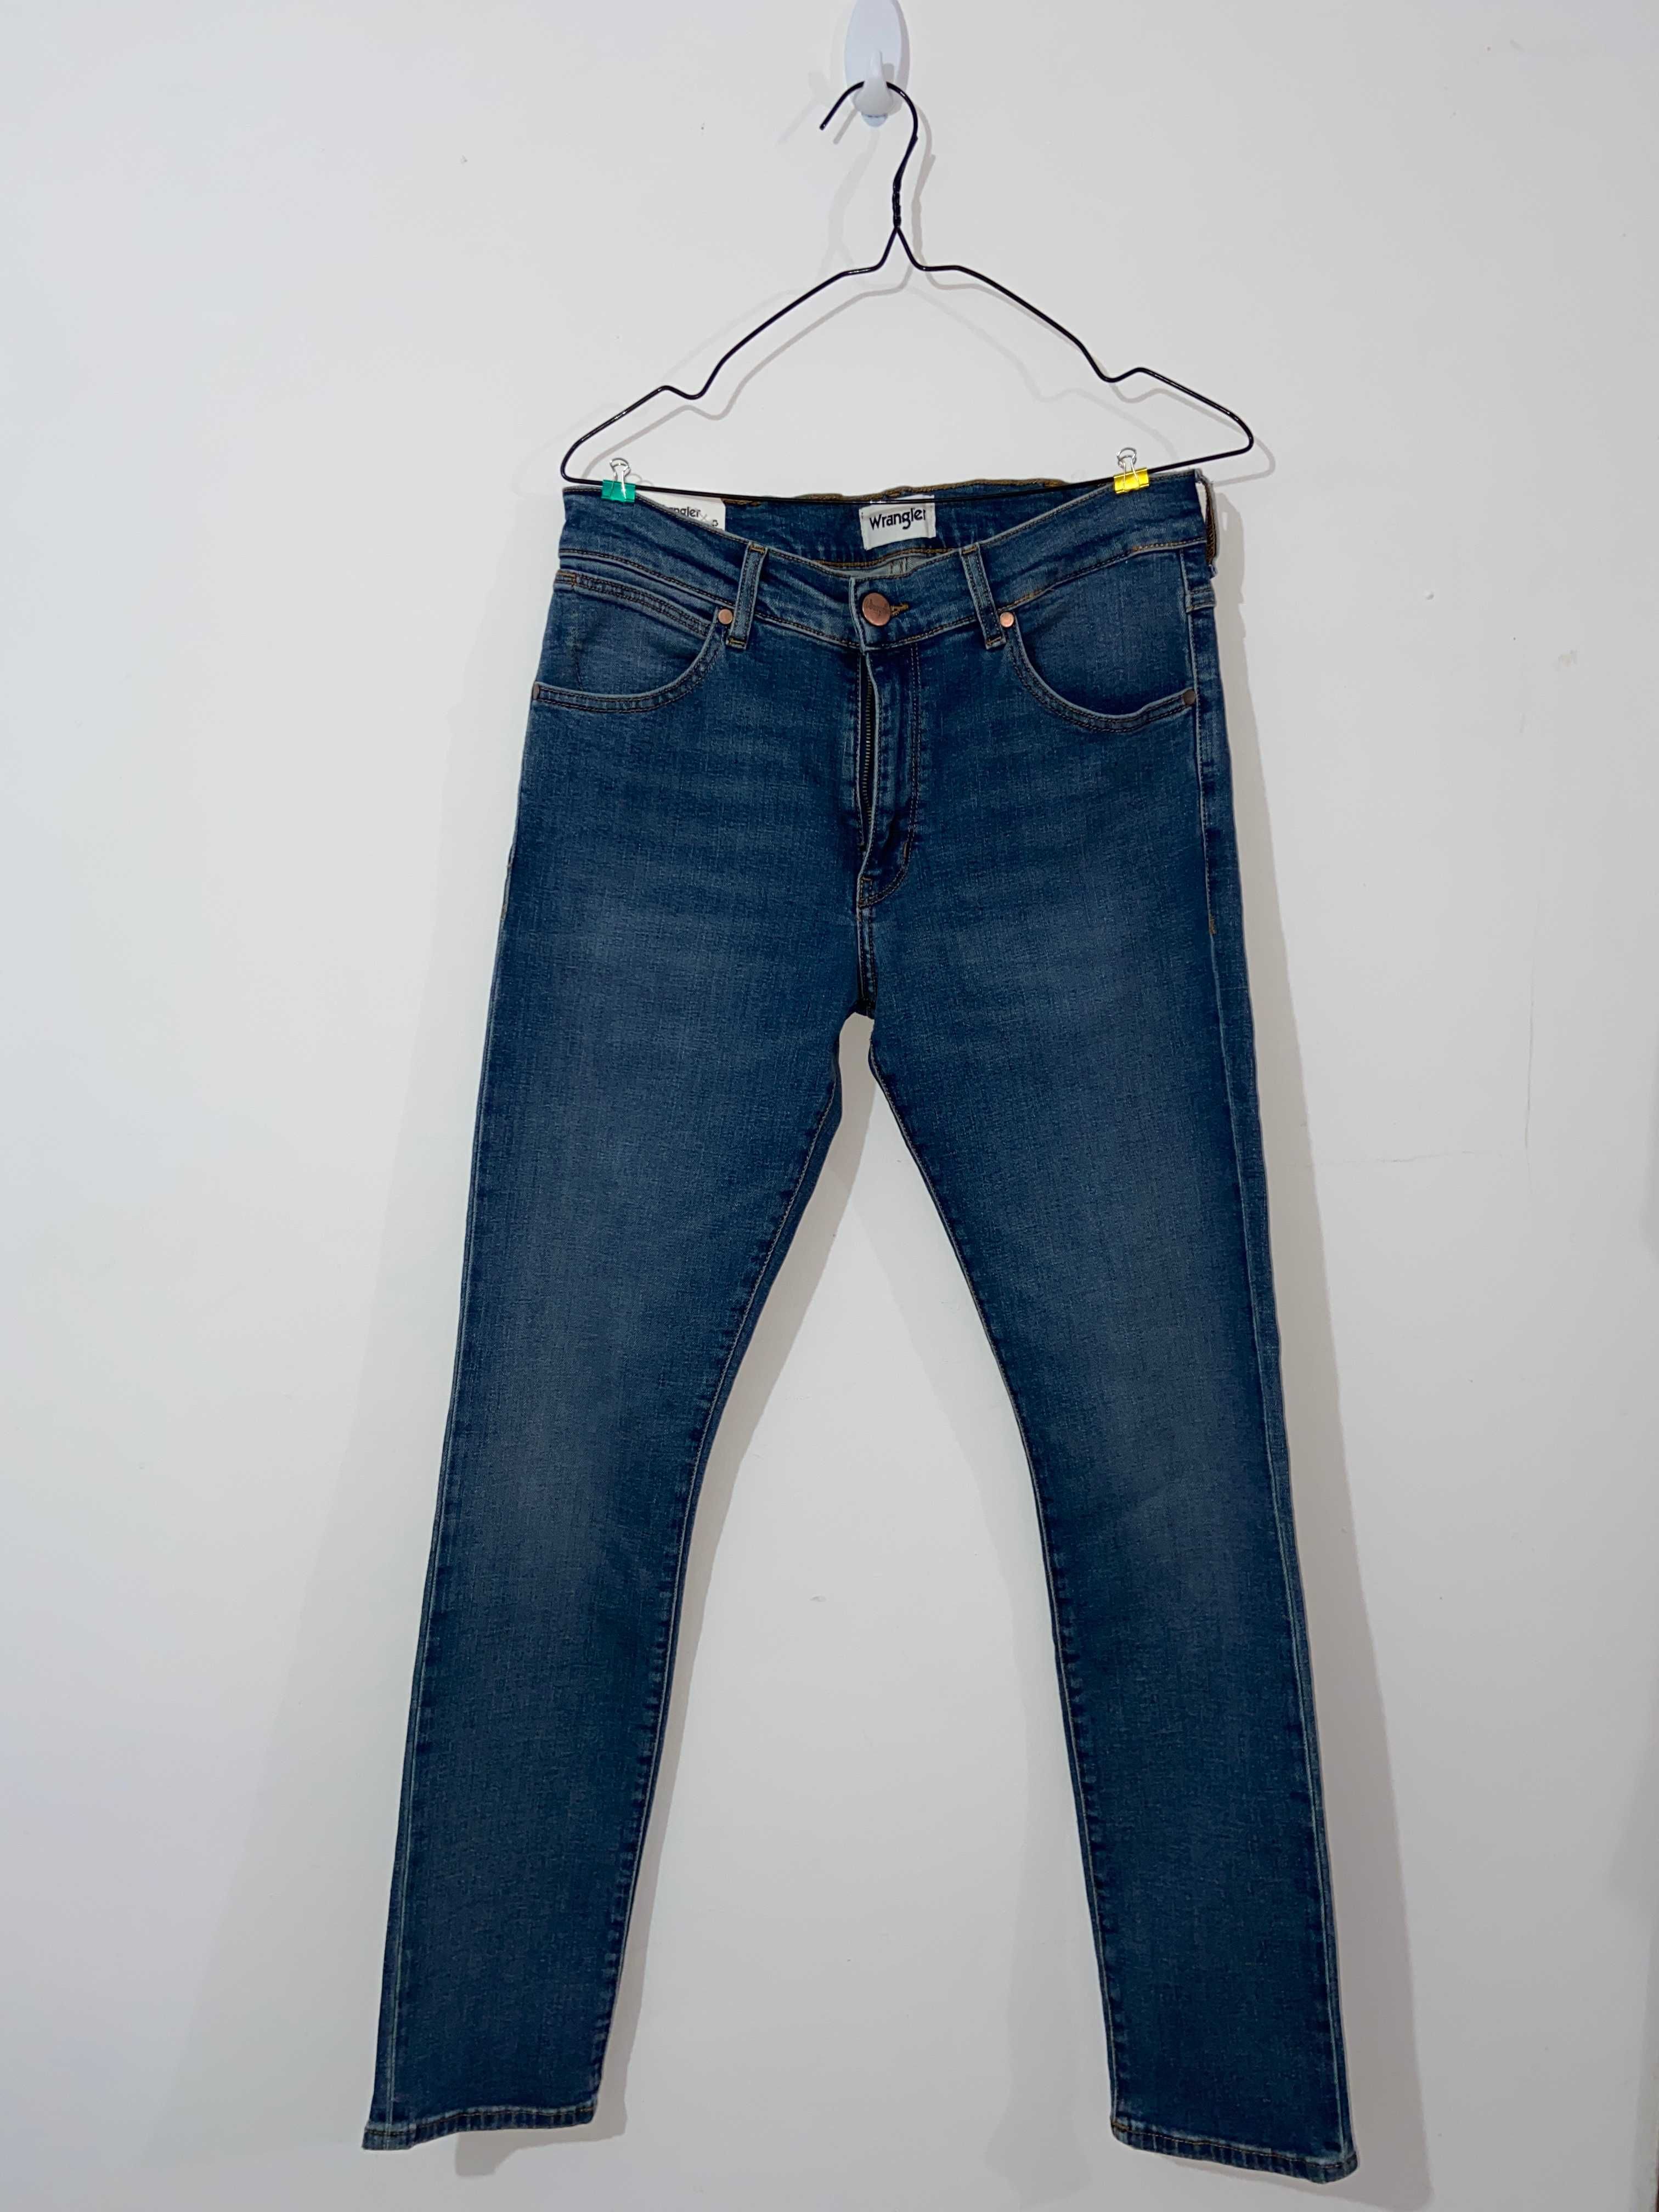 Wrangler Larston 812 Men's Slim Tapered Jeans W30/L32 [NOVO]